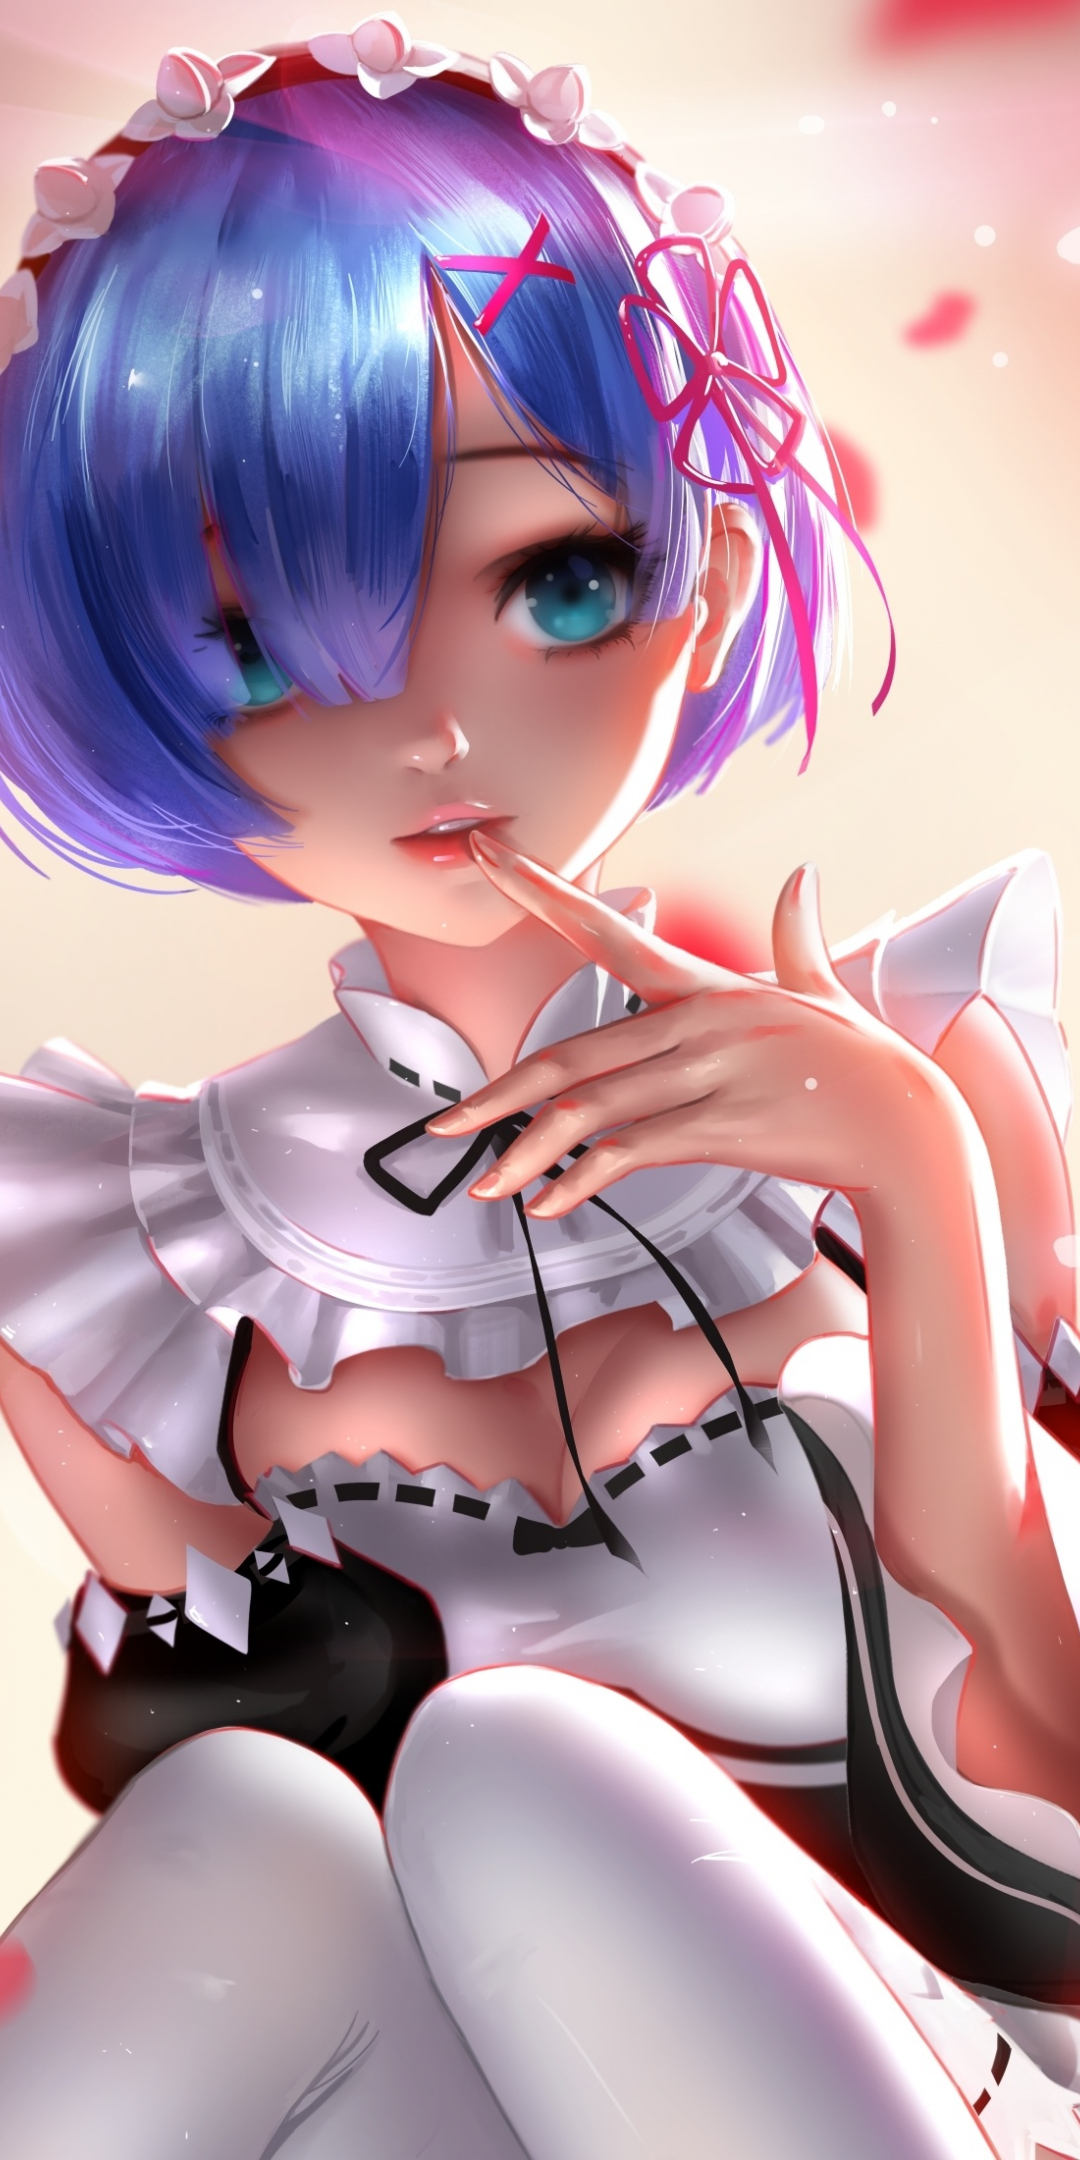 Hot, Rem, Re:Zero, anime girl, artwork, 1080x2160 wallpaper